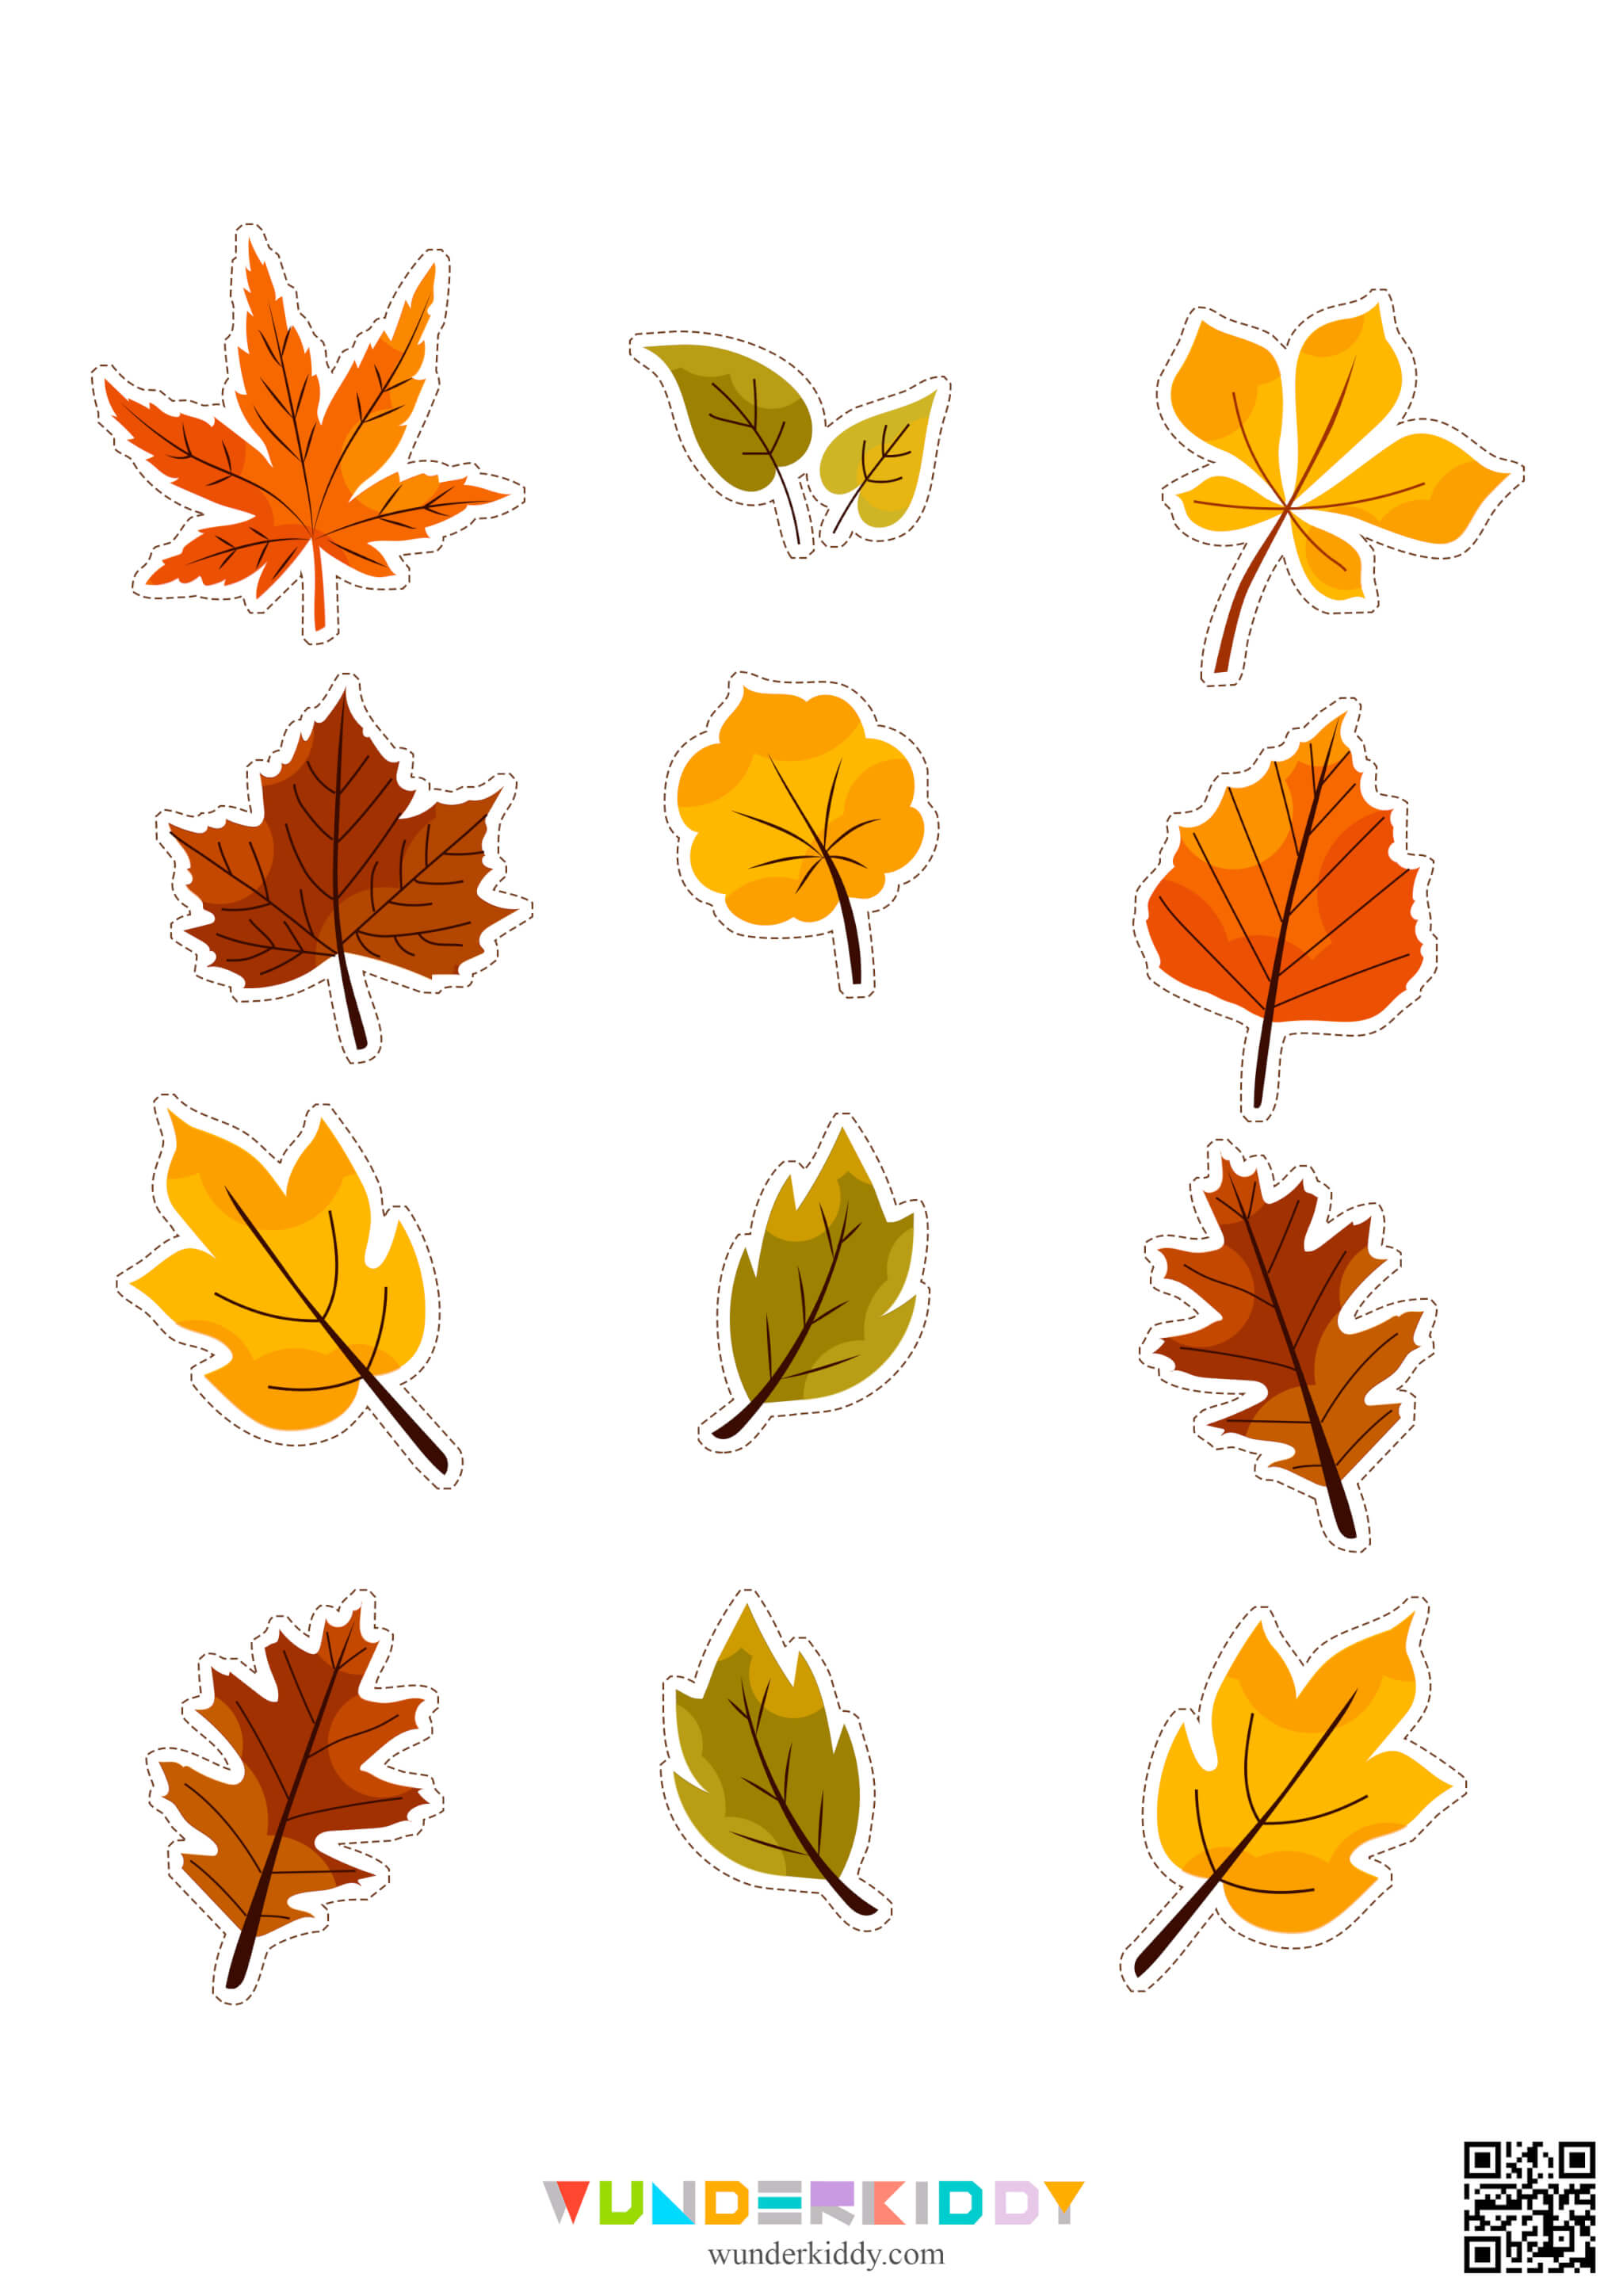 Worksheets «Leaf fall» - Image 12